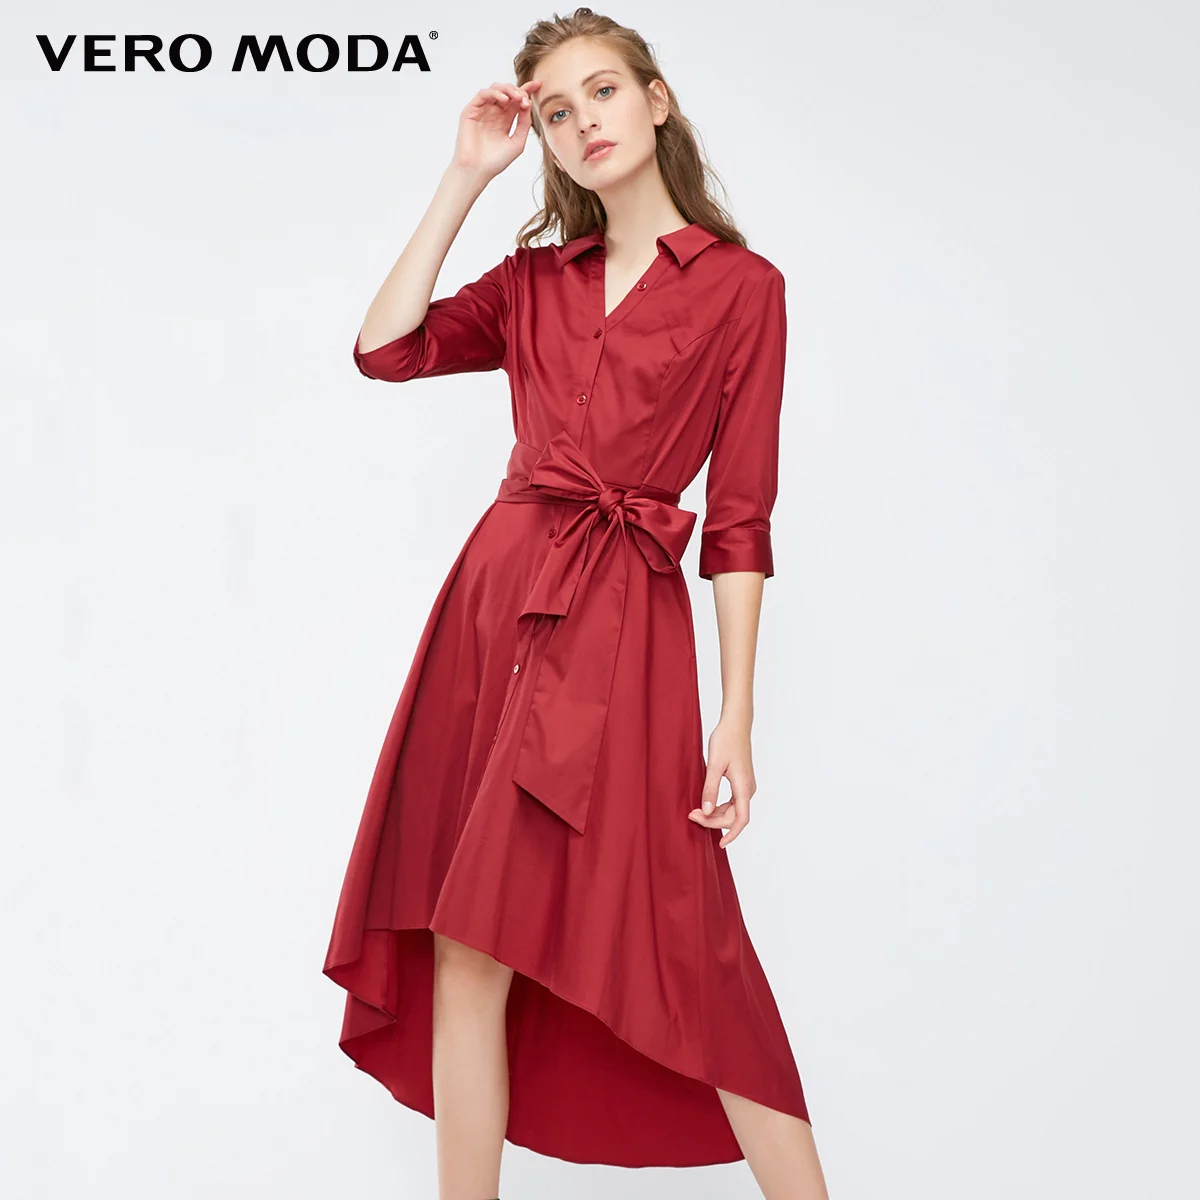 Vero Moda платье-рубашка с v-образным вырезом и рукавами три четверти | 31837C519 - Цвет: Rhubard